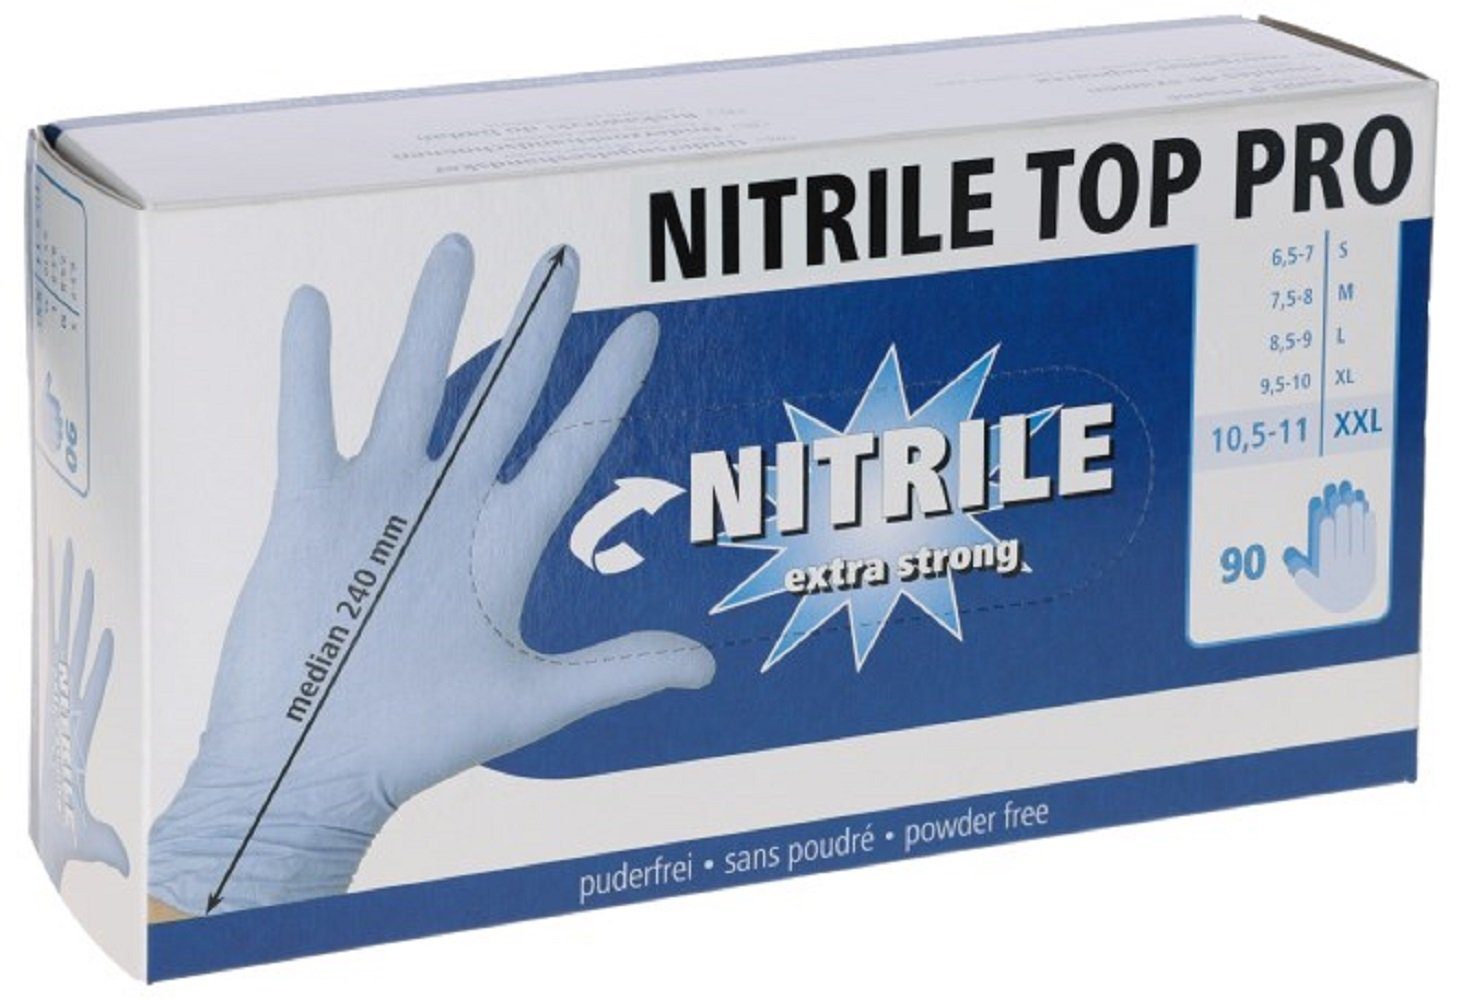 Kerbl Einweghandschuhe Einmalhandschuh Nitril Top 7,5-8 Größe blau, M, Pro, / 153071